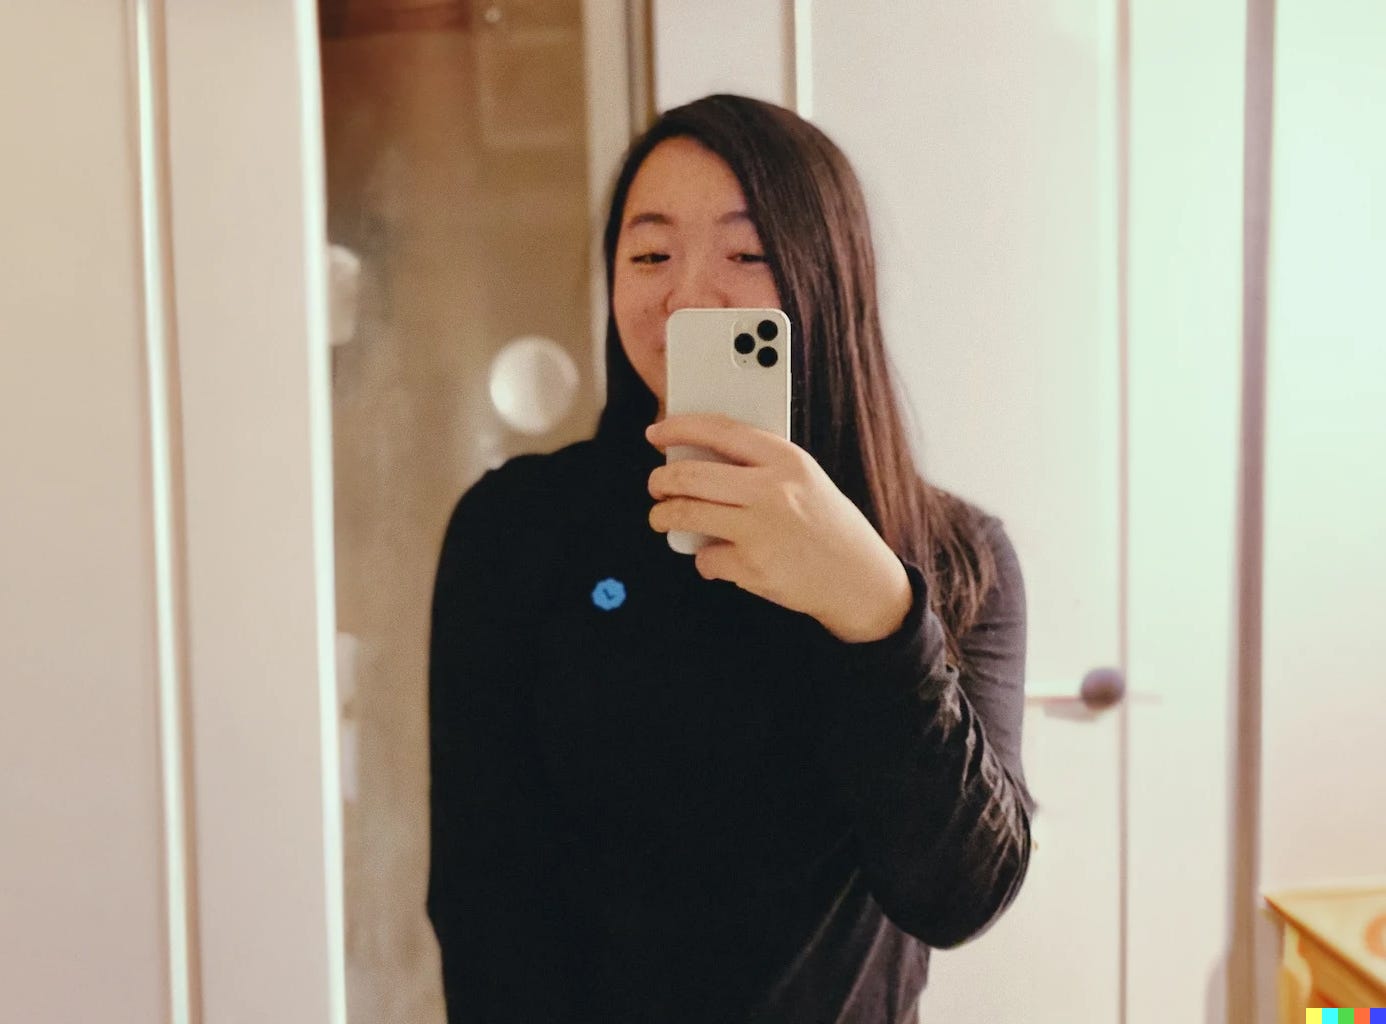 Jane Manchun Wong mirror selfie